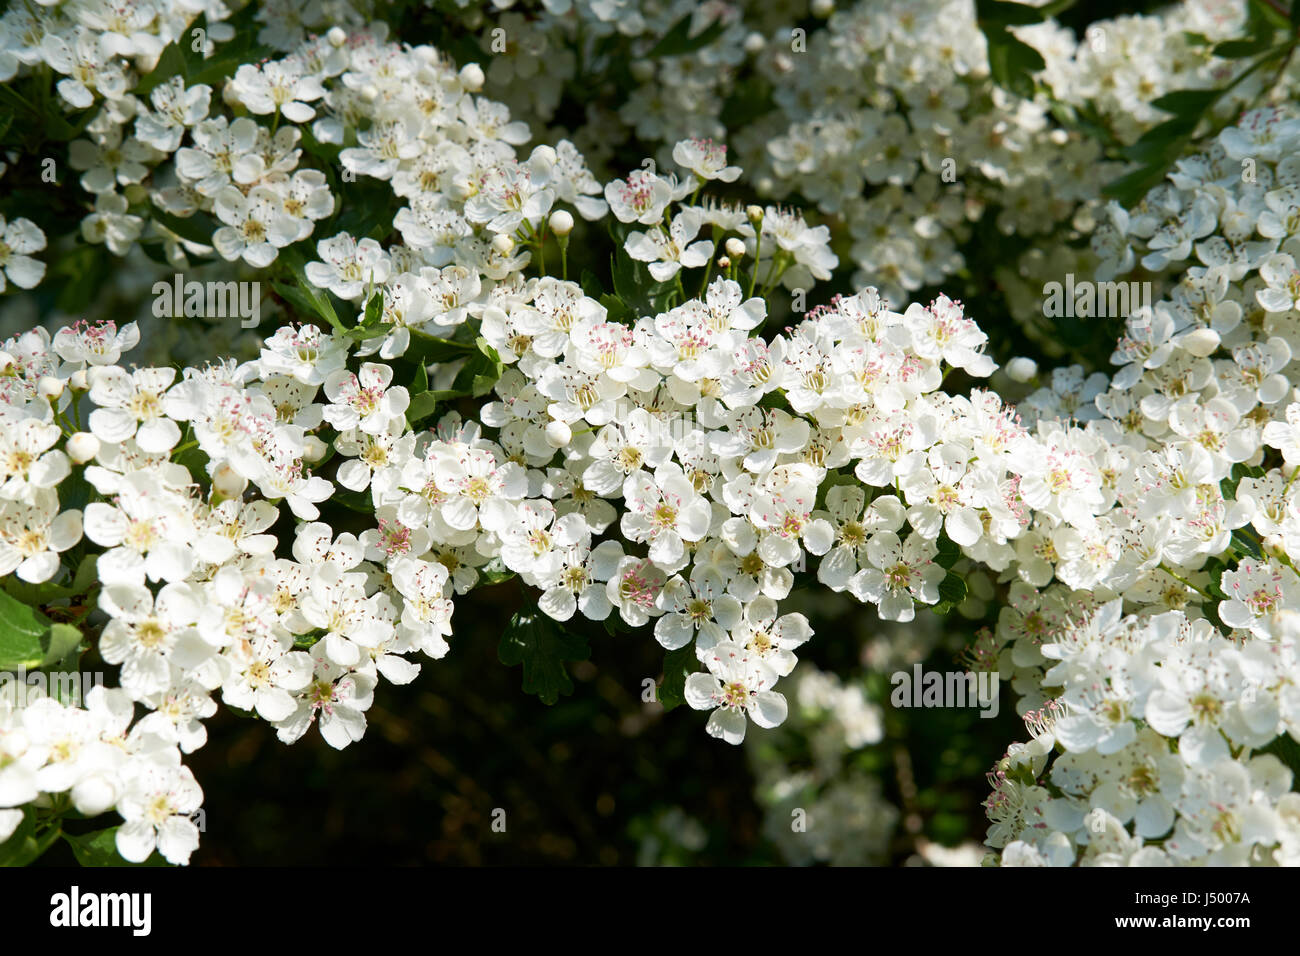 Fleur blanche de l'aubépine (Crategus monogyna) arbuste, que l'on trouve couramment dans les haies dans tout le Royaume-Uni. Banque D'Images